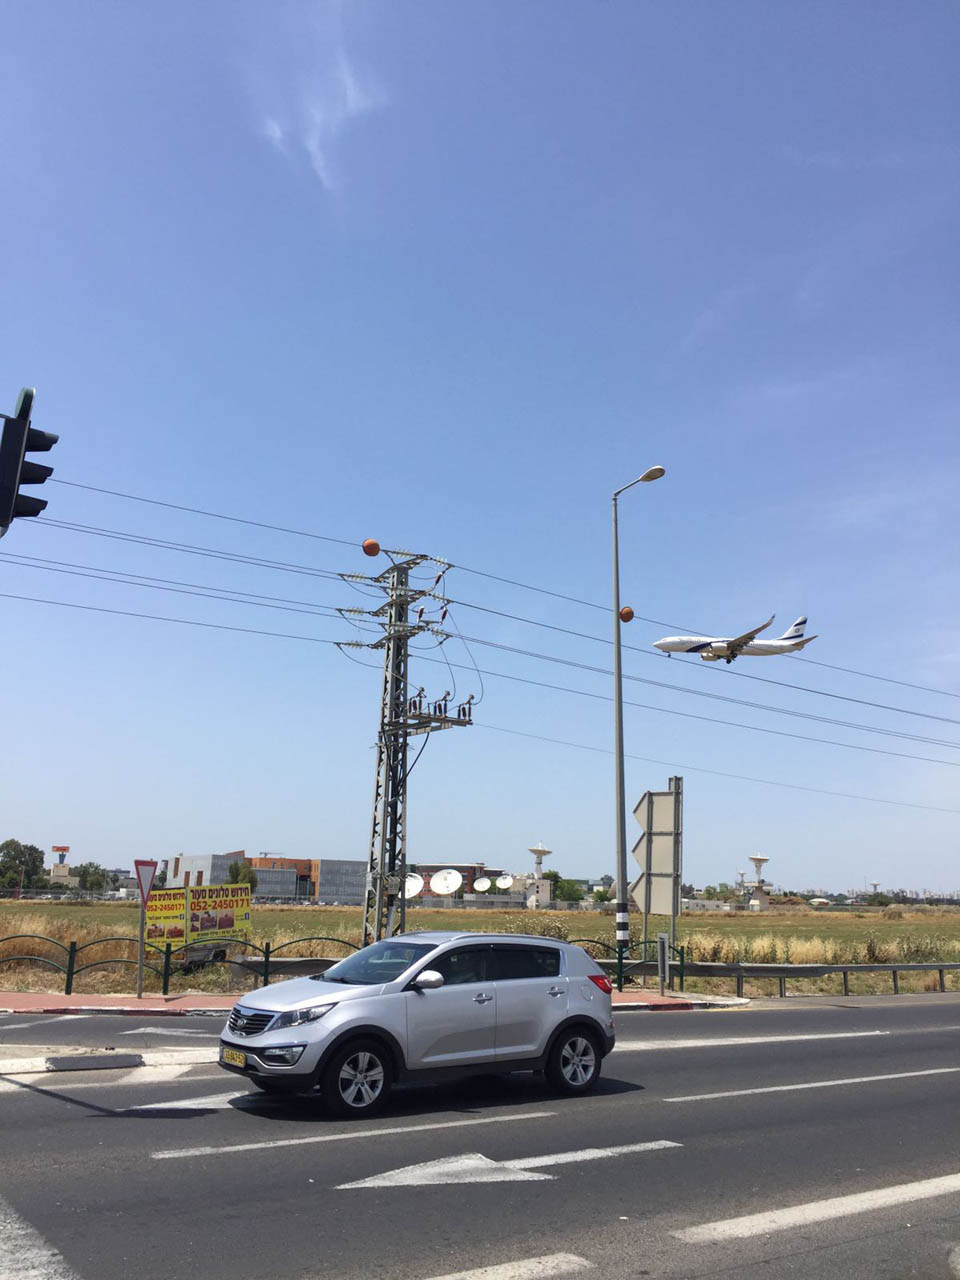 "Еще один самолет с репатриантами спешит в Израиль" - фото с дороги в новой стране